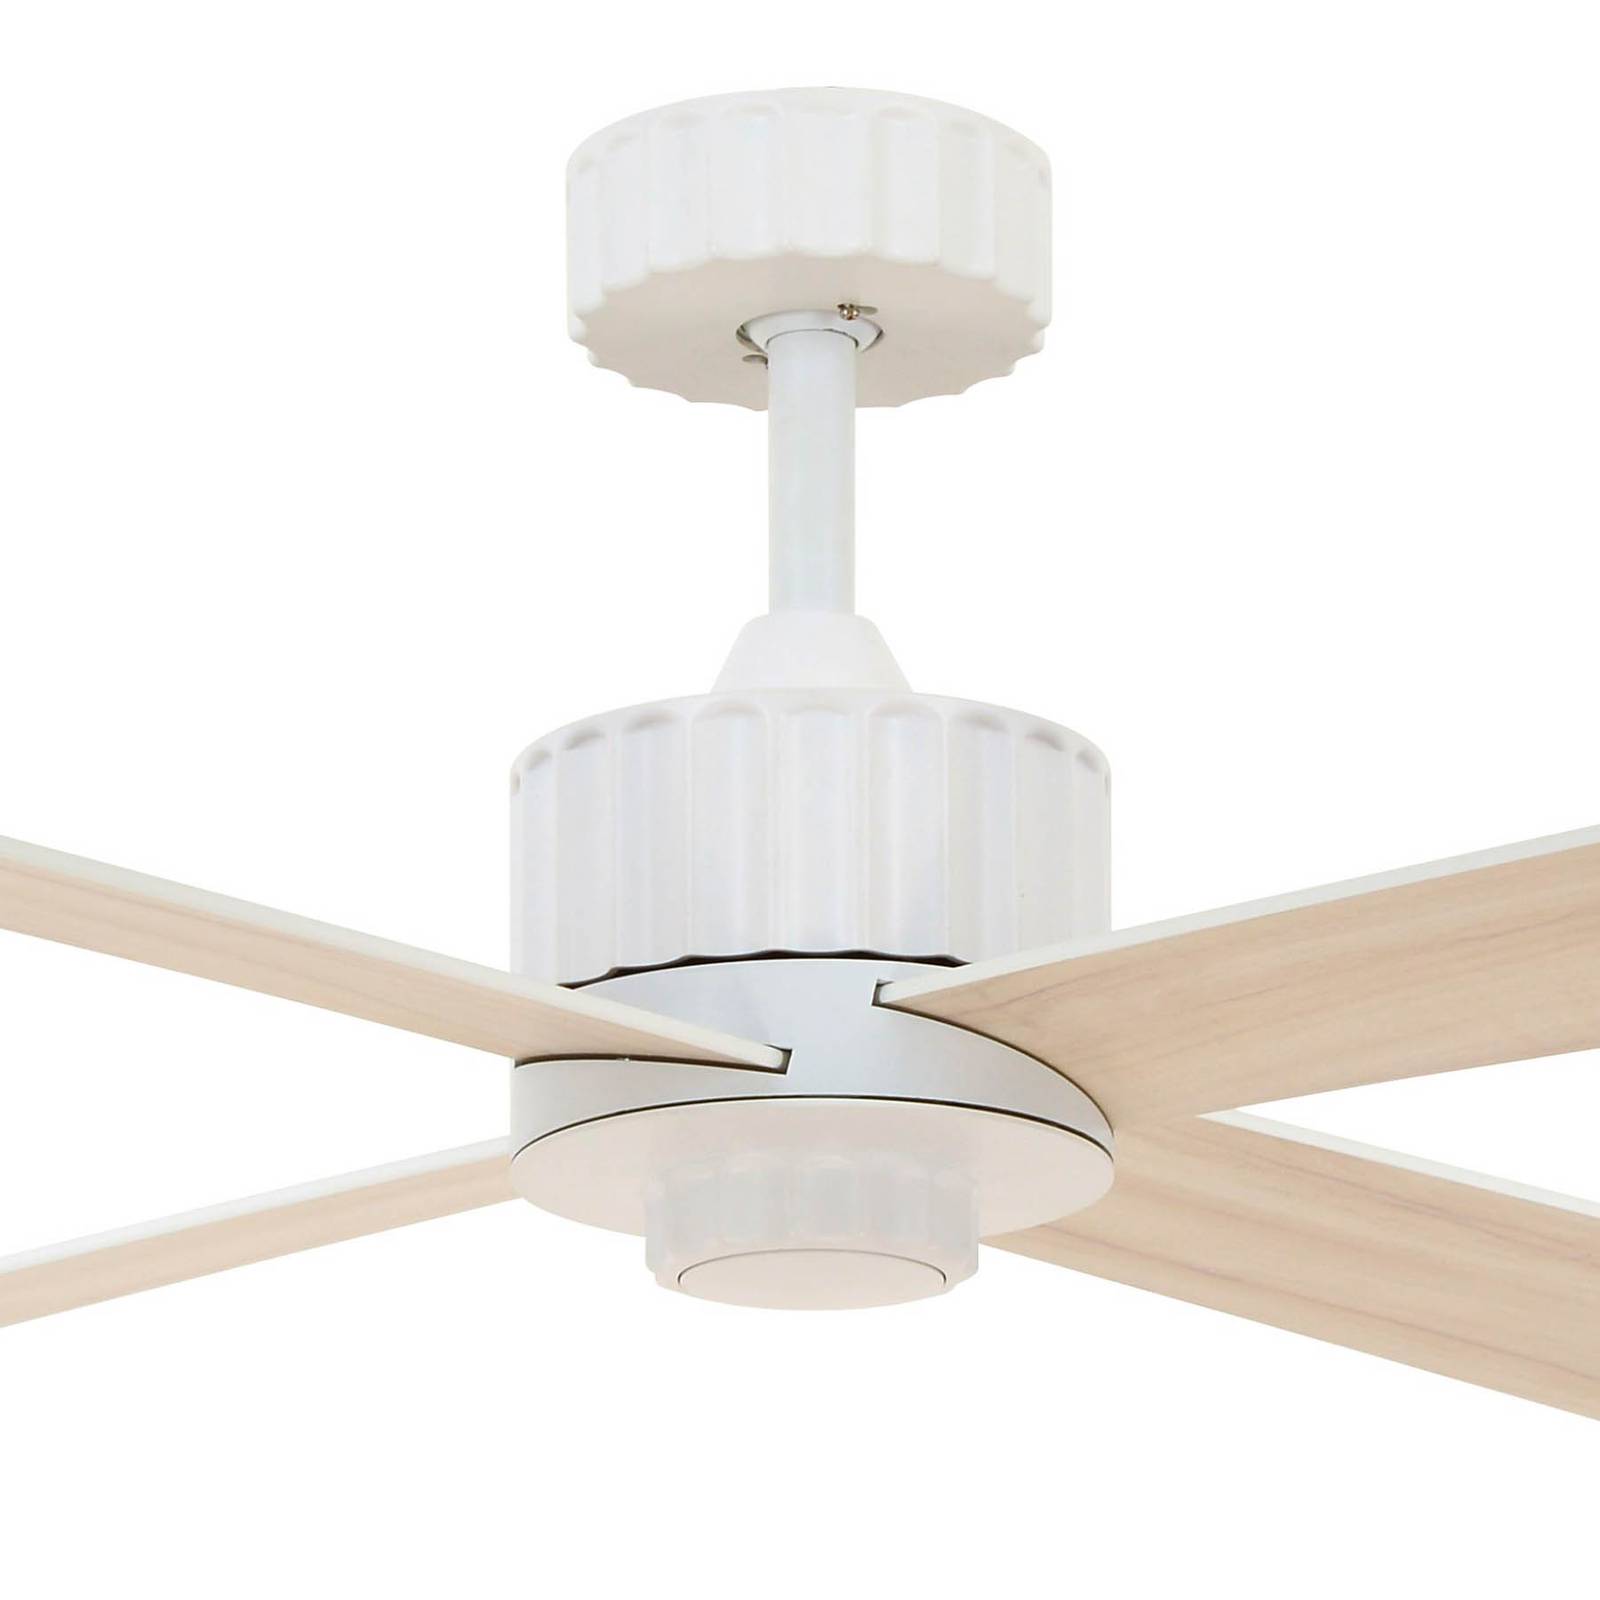 Newport ceiling fan LED light, white/oak